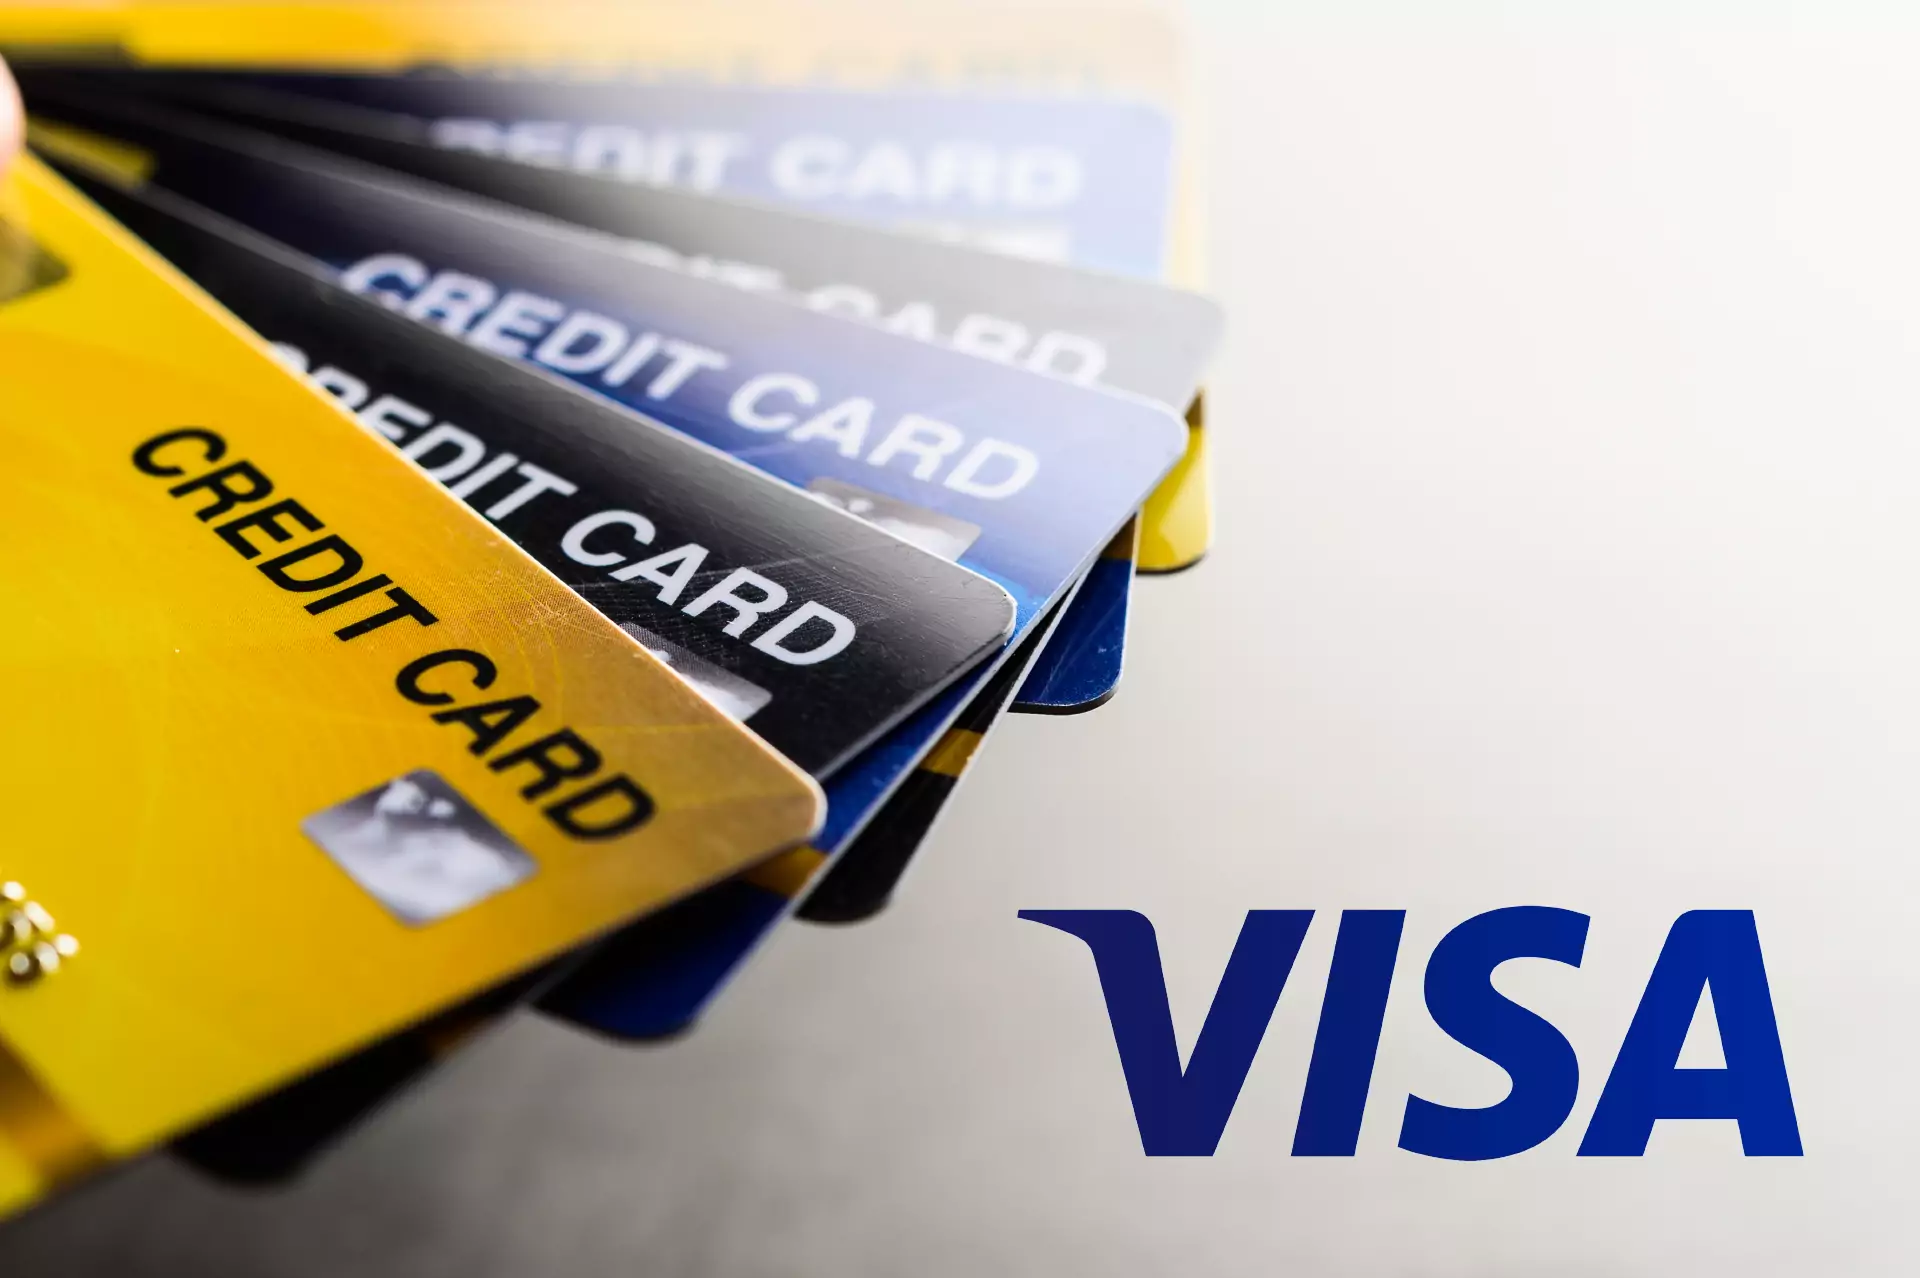 Visa एक अंतरराष्ट्रीय भुगतान प्रणाली है जो दुनिया भर के बैंकों के बीच लेनदेन को सरल बनाती है।